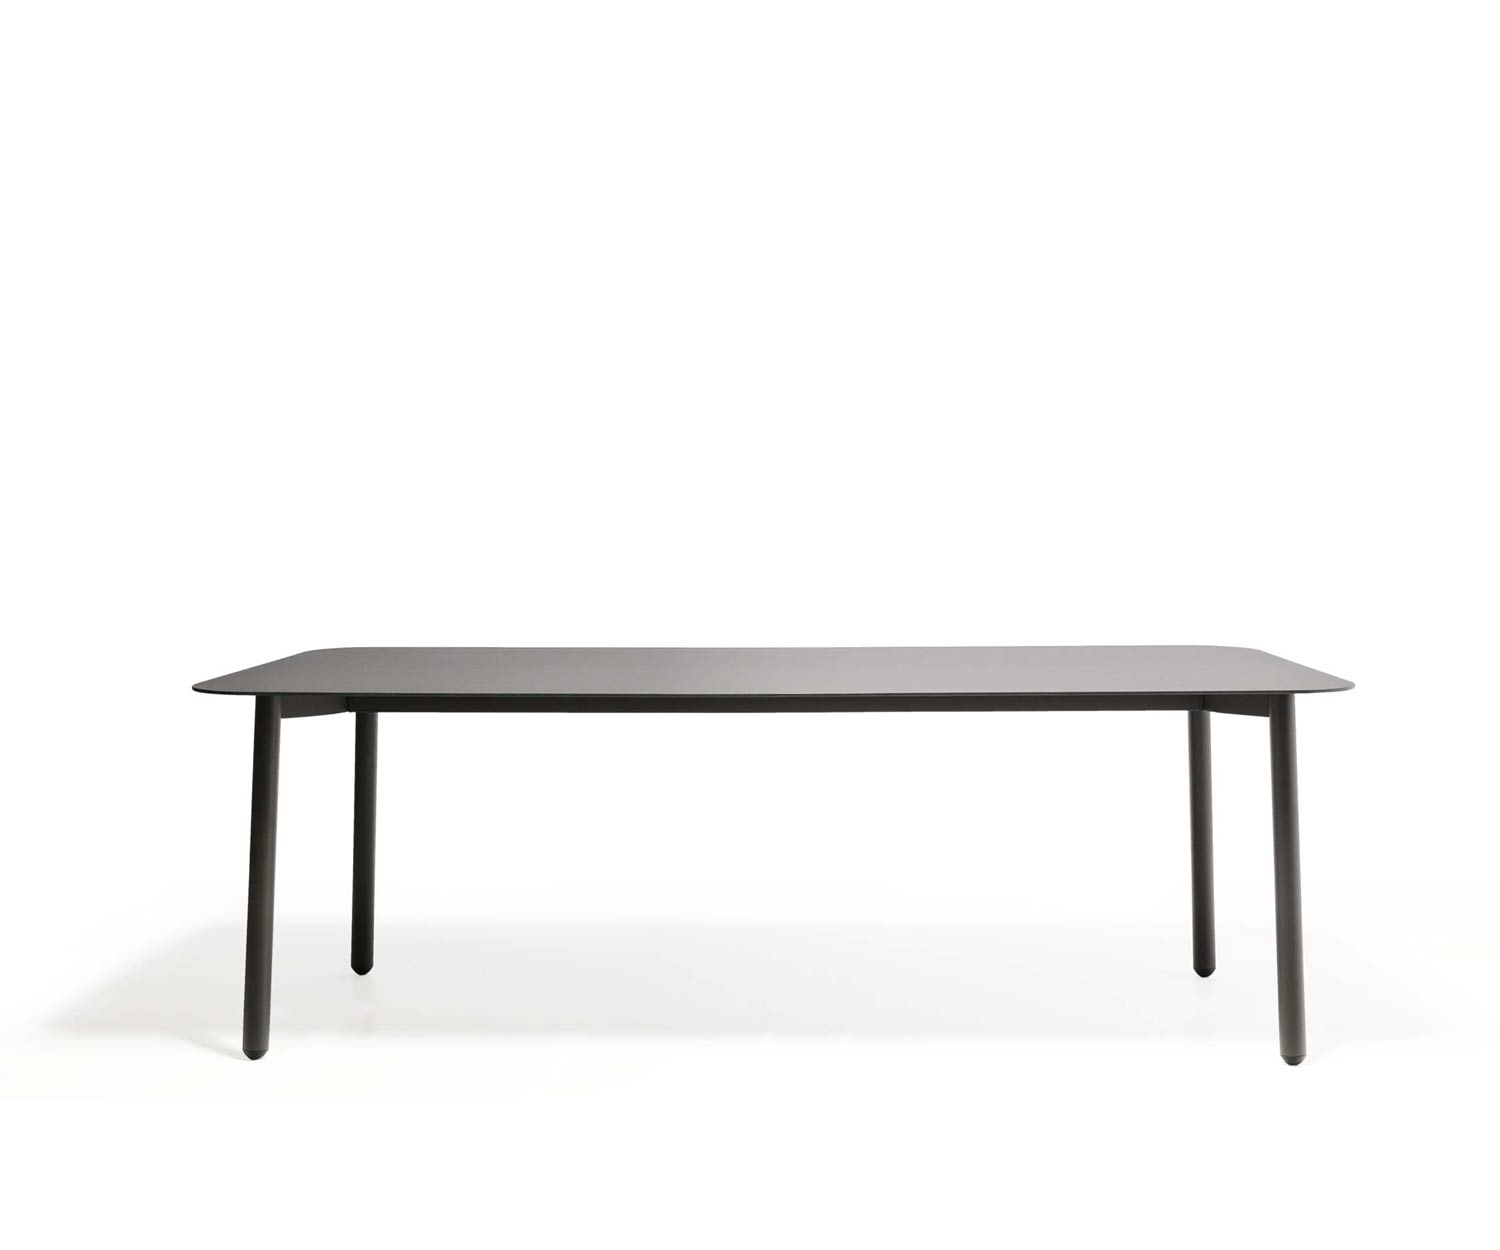 Table de jardin exclusive Todus Starling Design avec structure en acier inoxydable revêtue par poudre